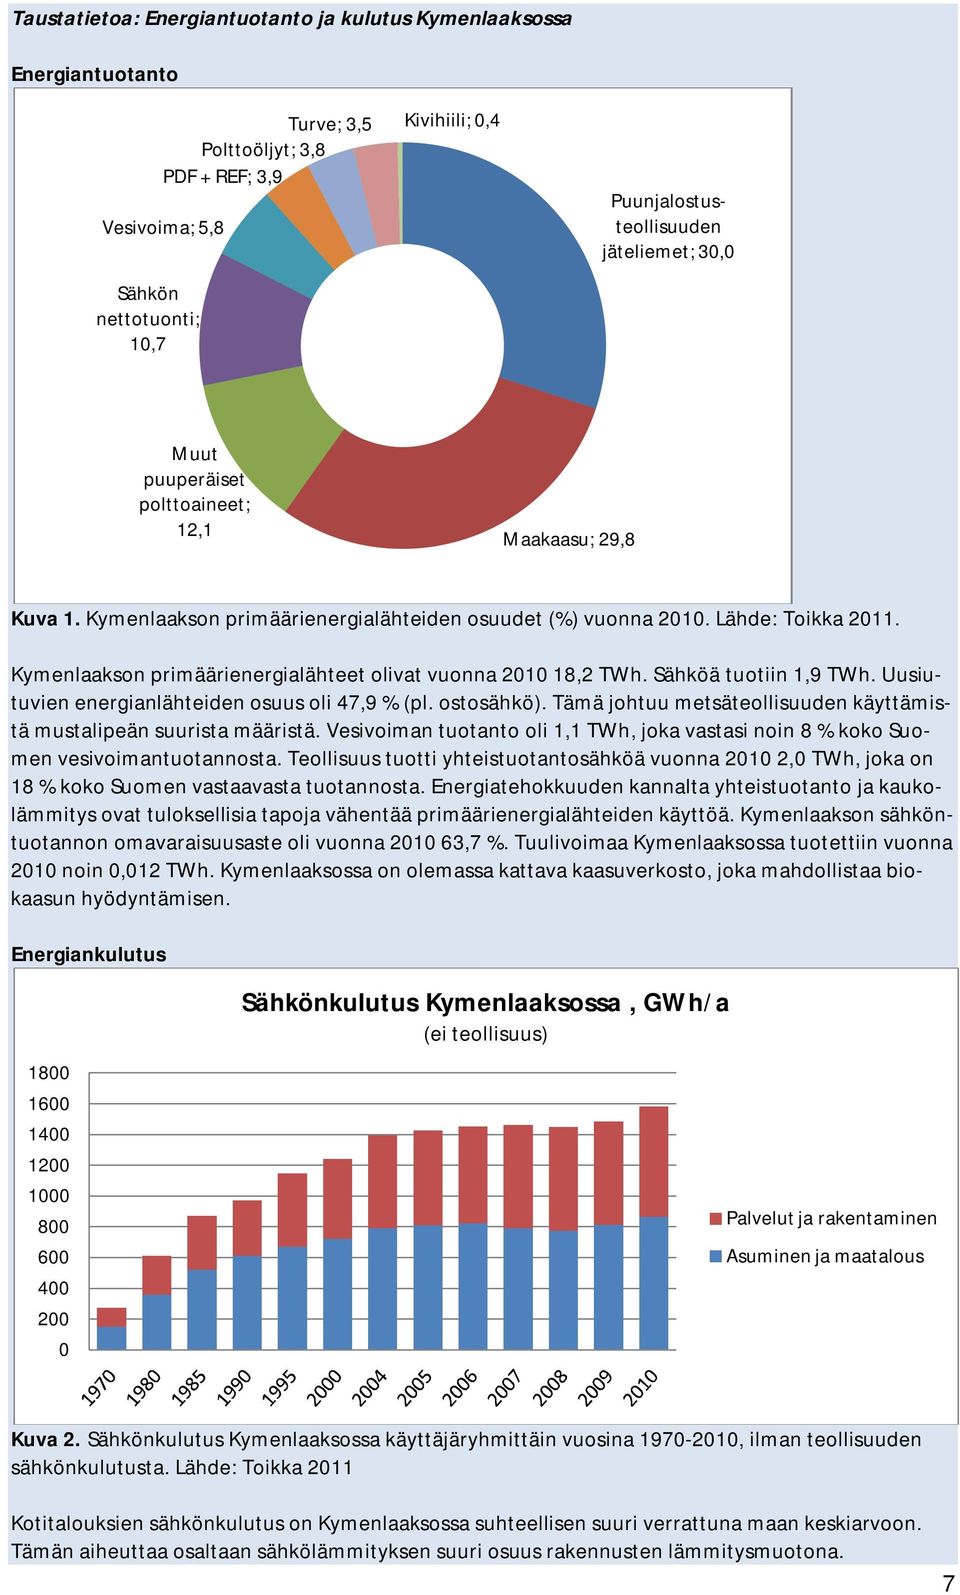 Kymenlaakson primäärienergialähteet olivat vuonna 2010 18,2 TWh. Sähköä tuotiin 1,9 TWh. Uusiutuvien energianlähteiden osuus oli 47,9 % (pl. ostosähkö).